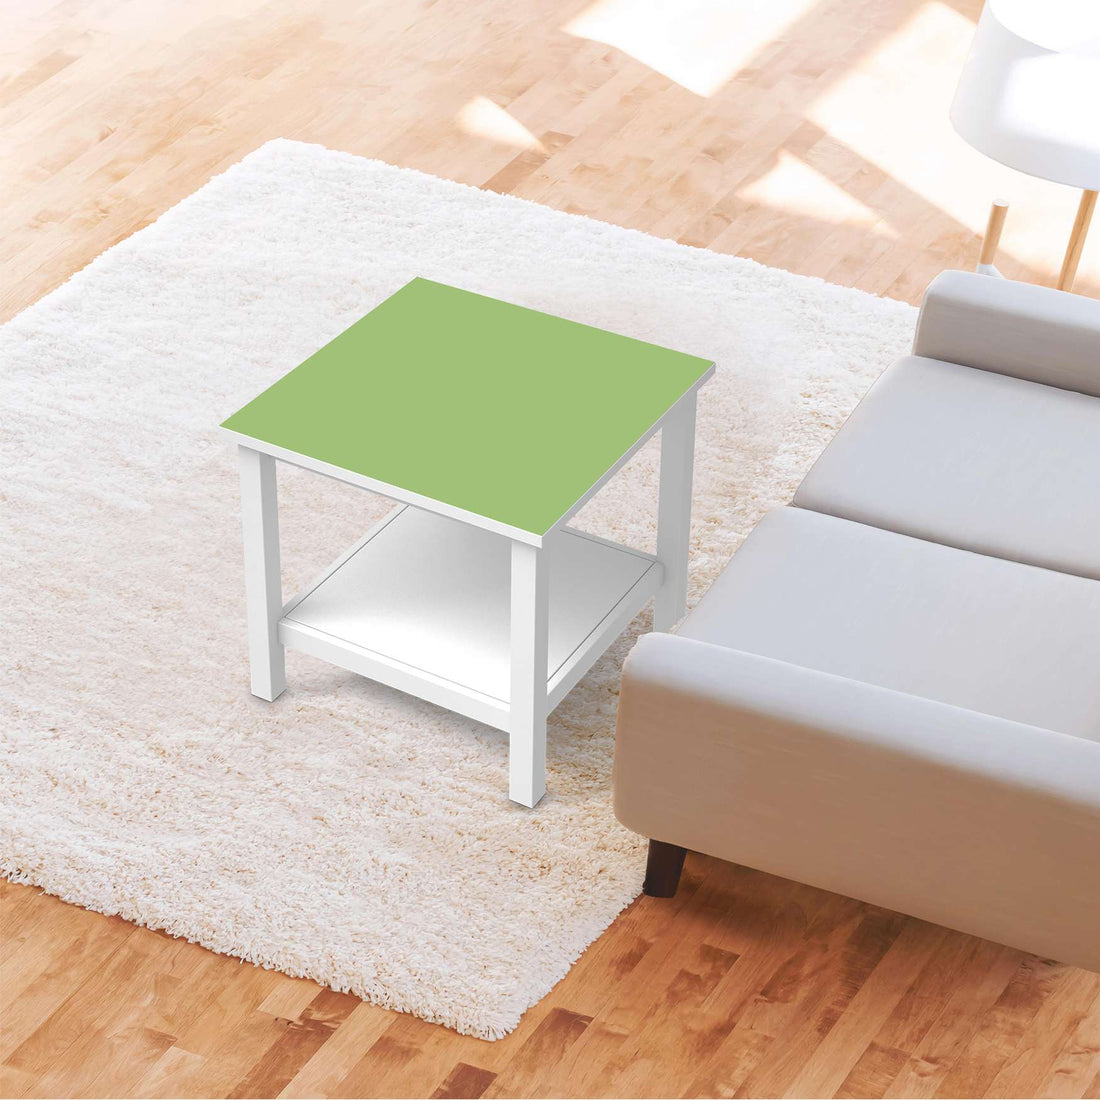 Möbel Klebefolie Hellgrün Light - IKEA Hemnes Beistelltisch 55x55 cm - Wohnzimmer